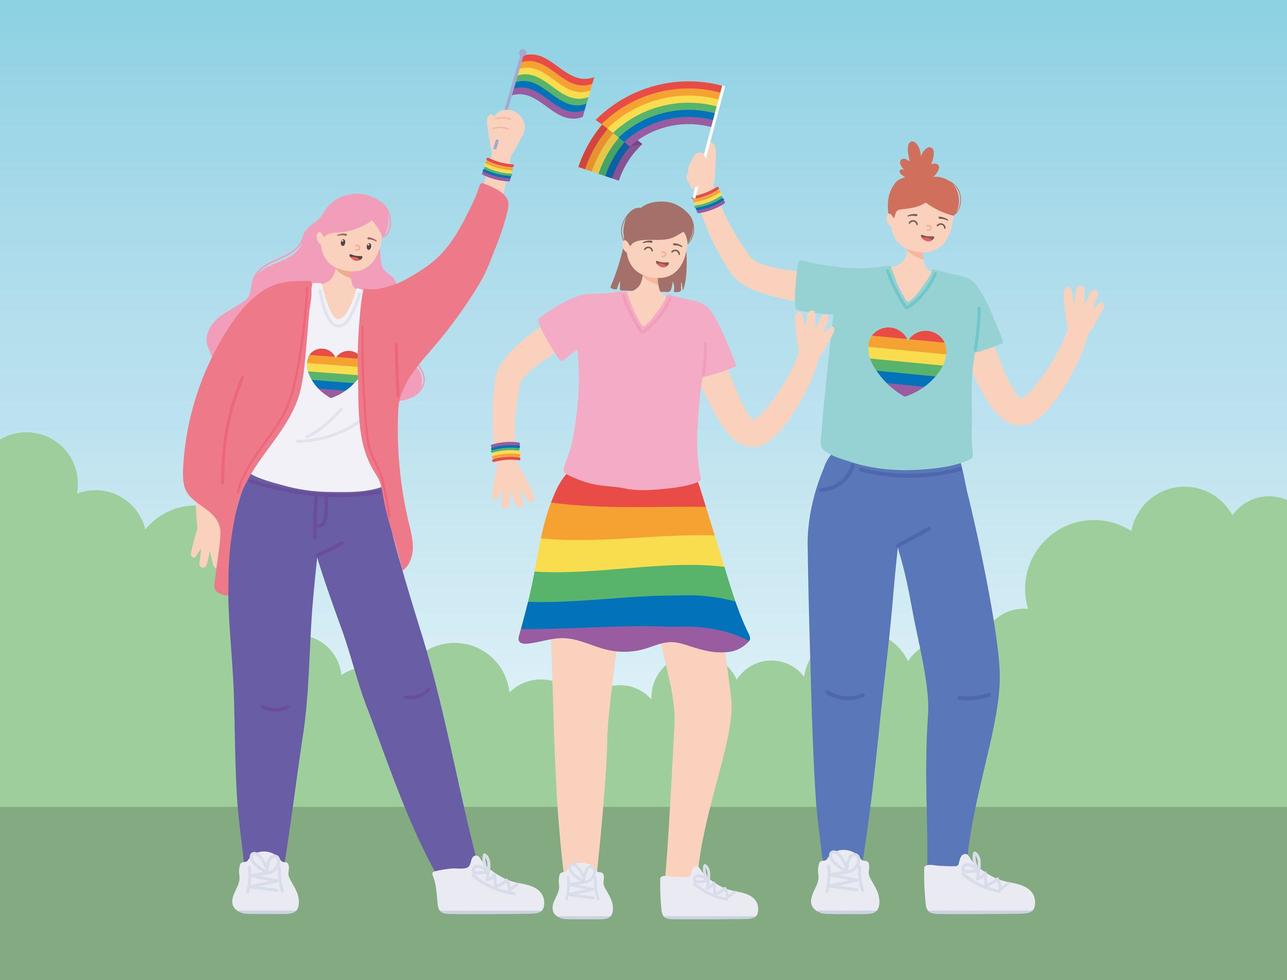 comunidade LGBTQ, mulheres jovens com bandeira do arco-íris, desfile gay de protesto contra discriminação sexual vetor